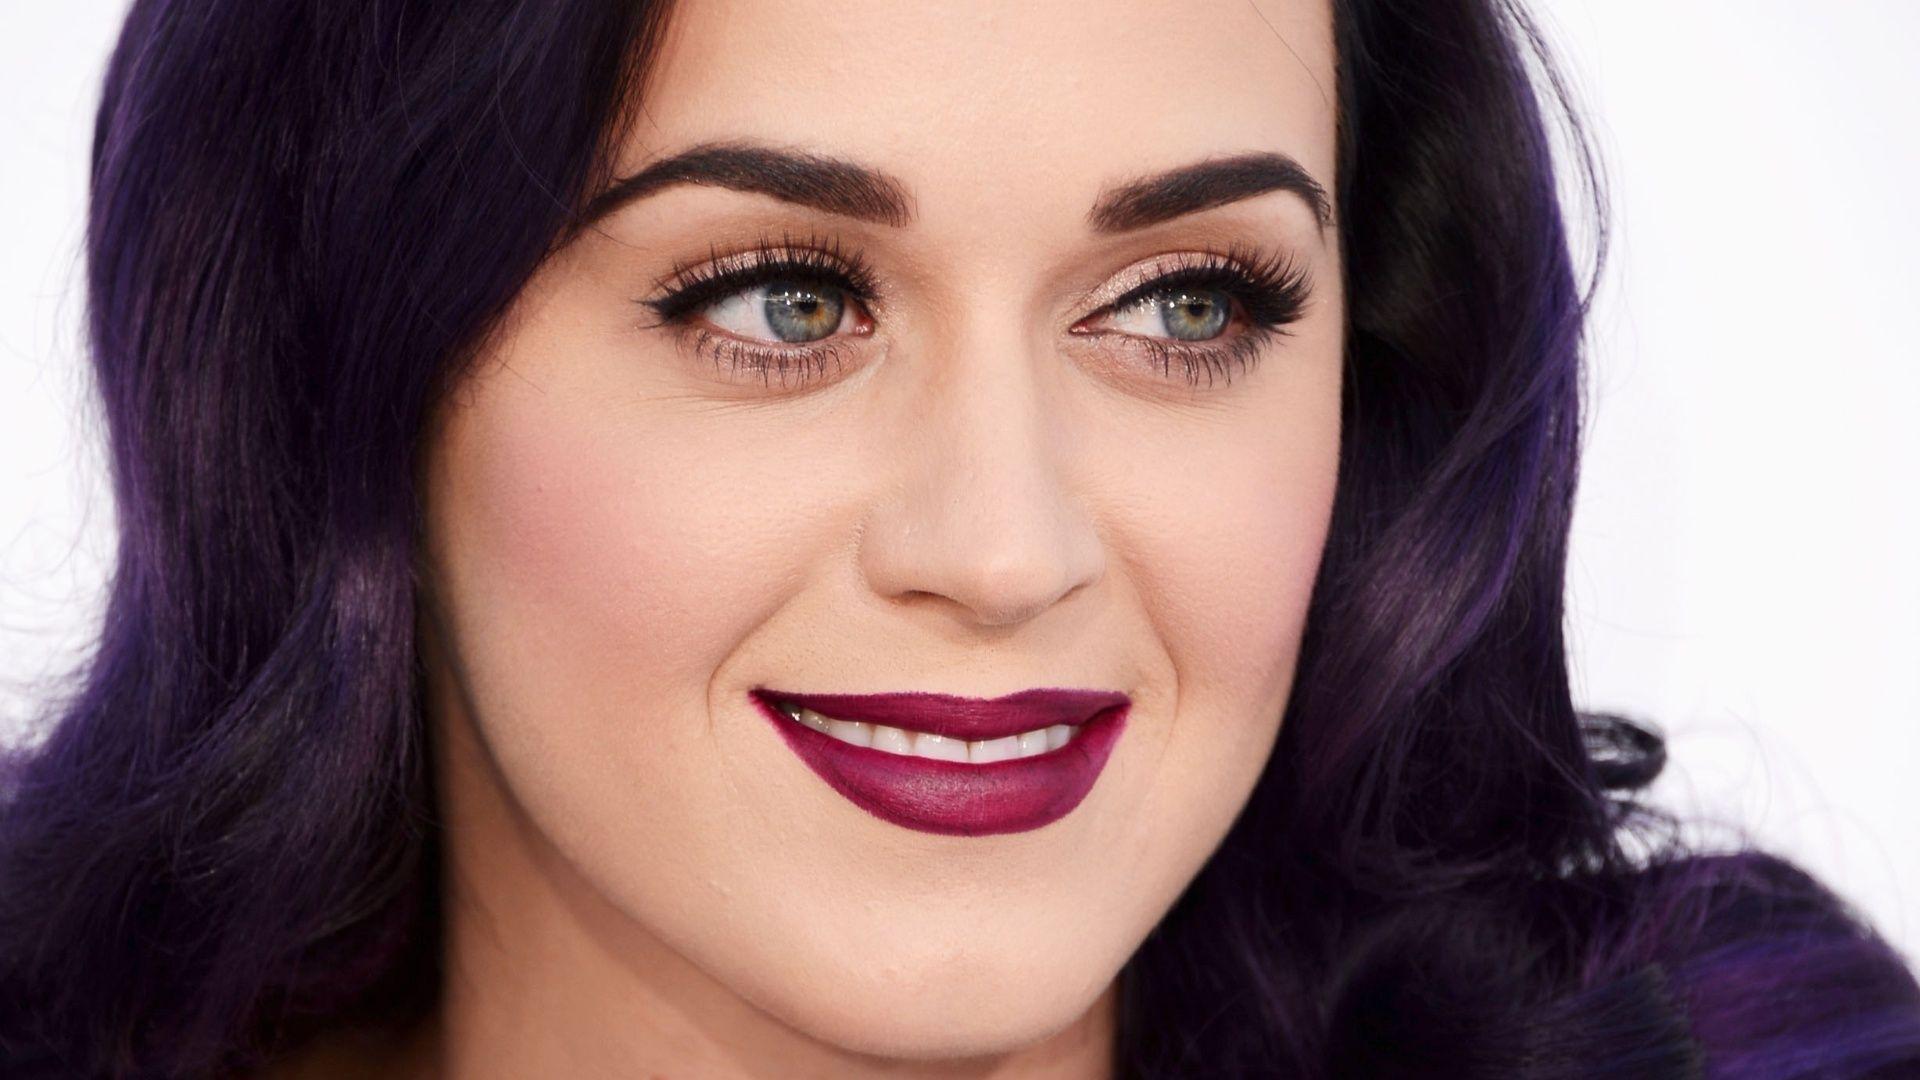 Katy Perry 2015: dating, smoking, origin, tattoos & body